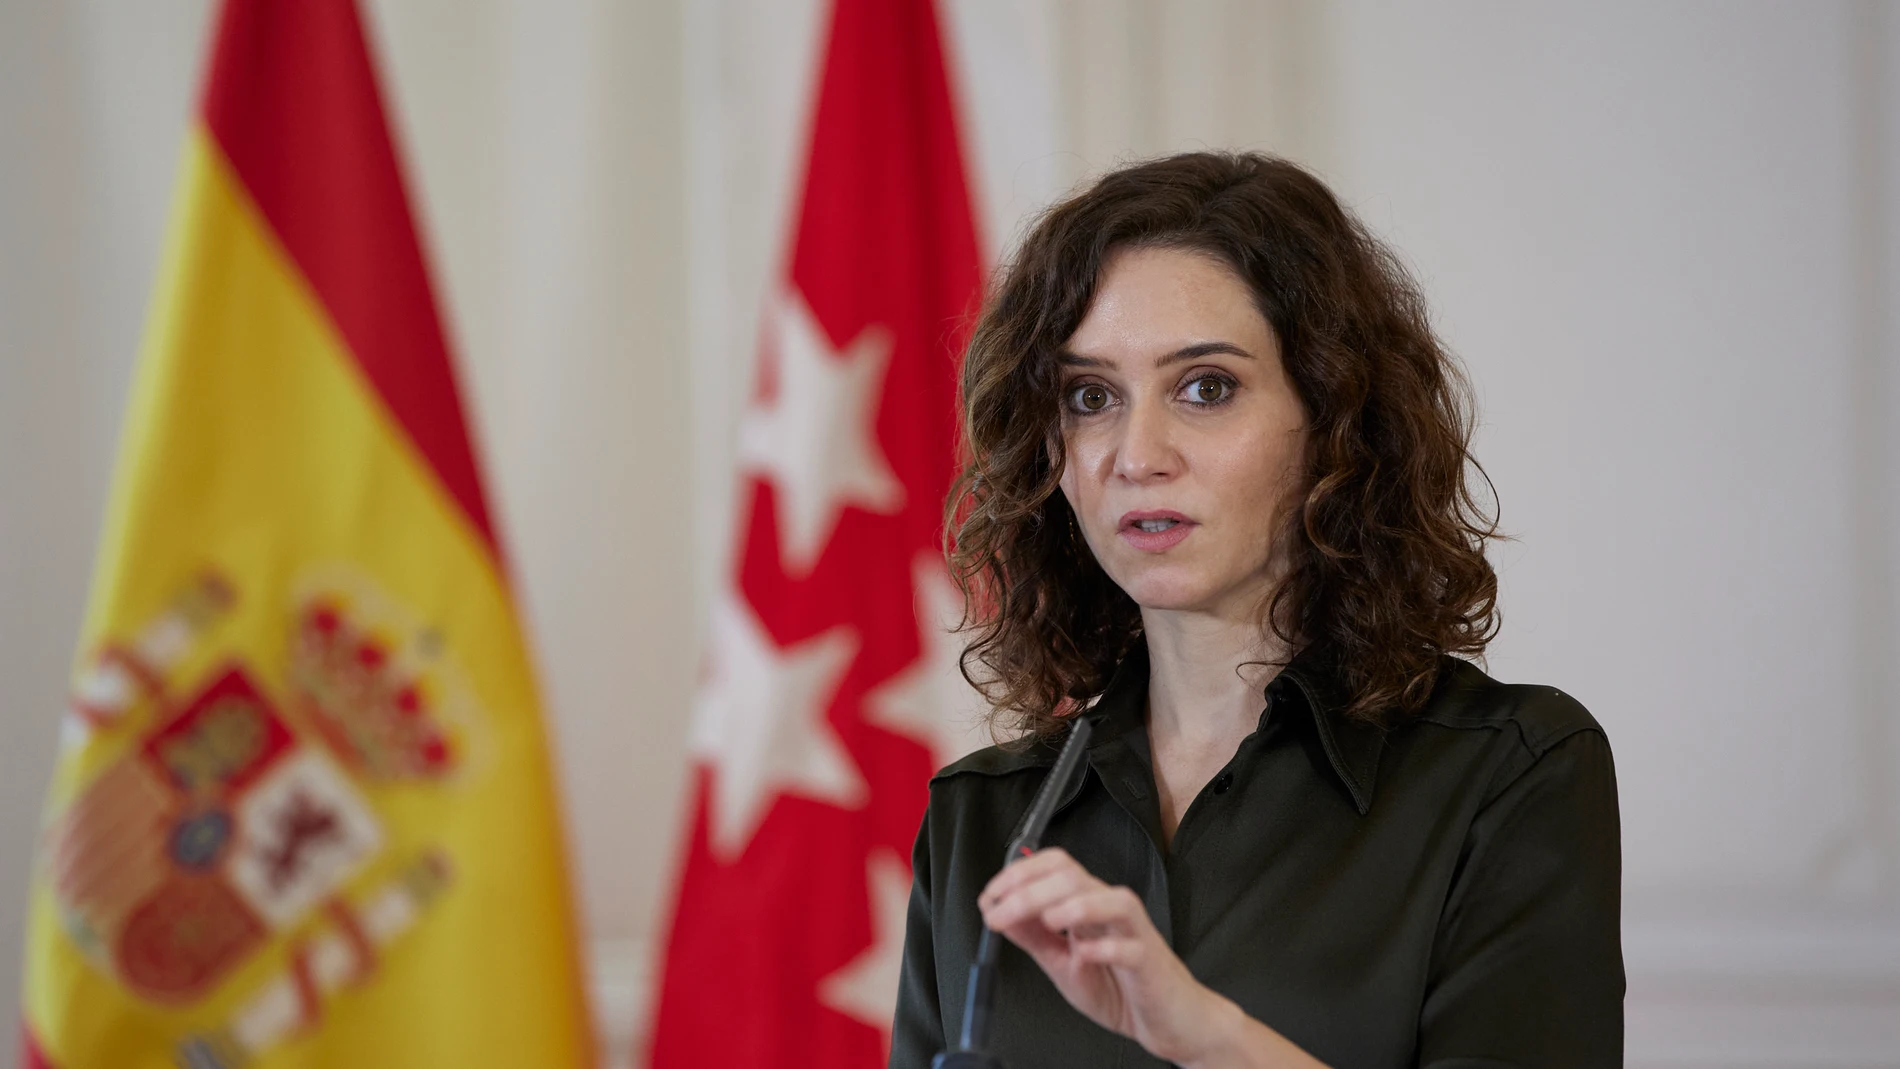 La presidenta de la Comunidad de Madrid, Isabel Díaz Ayuso, interviene en el acto donde ha recibido el galardón 'Recicla la Noche', en la Real Casa de Correos